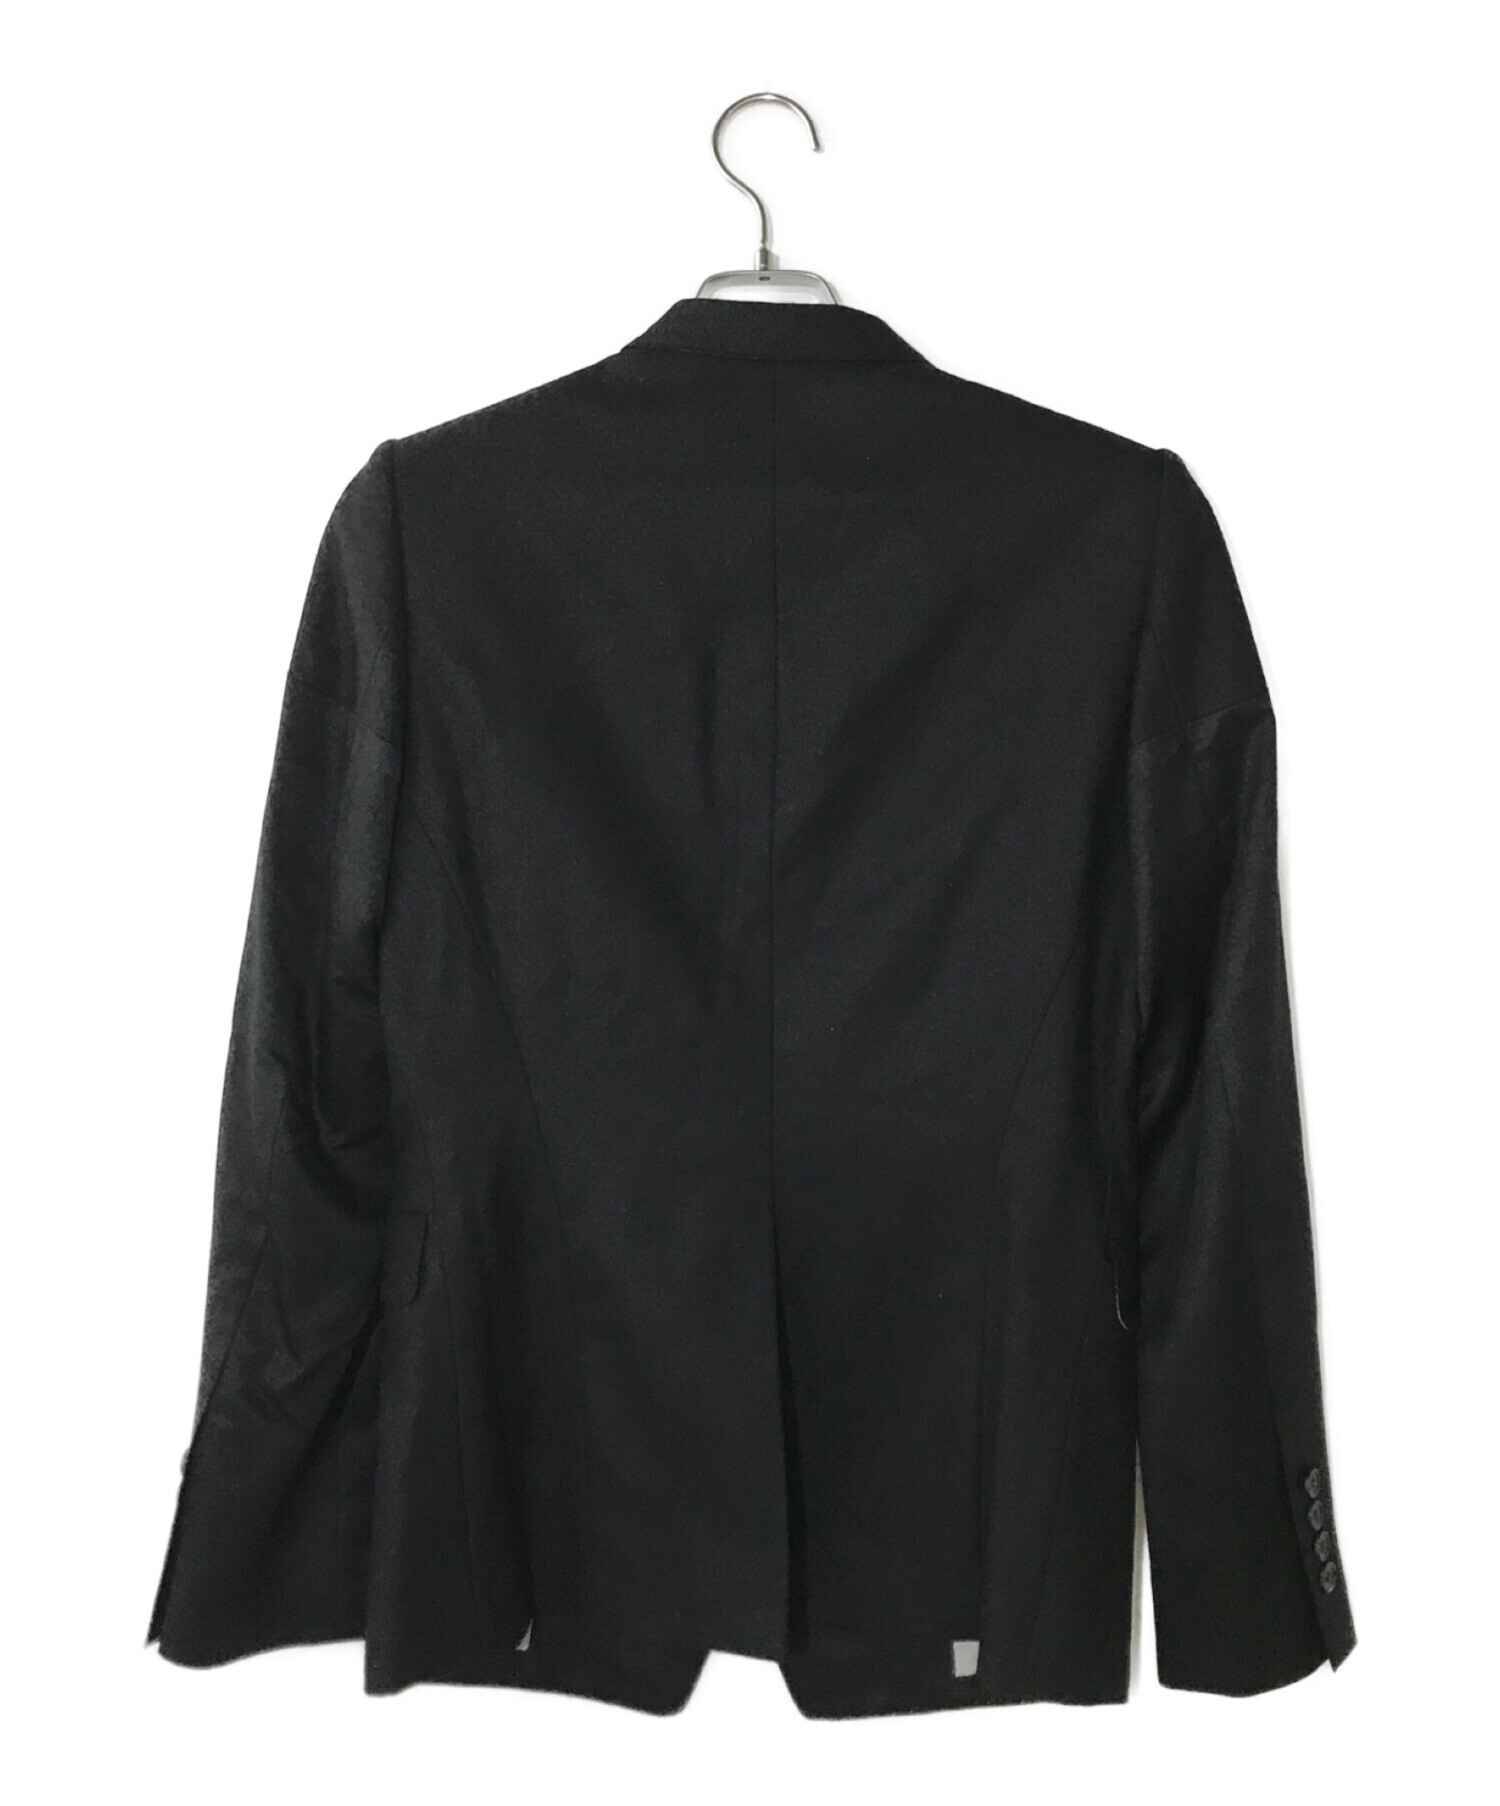 MA JULIUS (エムエイユリウス) テーラードジャケット ブラック サイズ:1